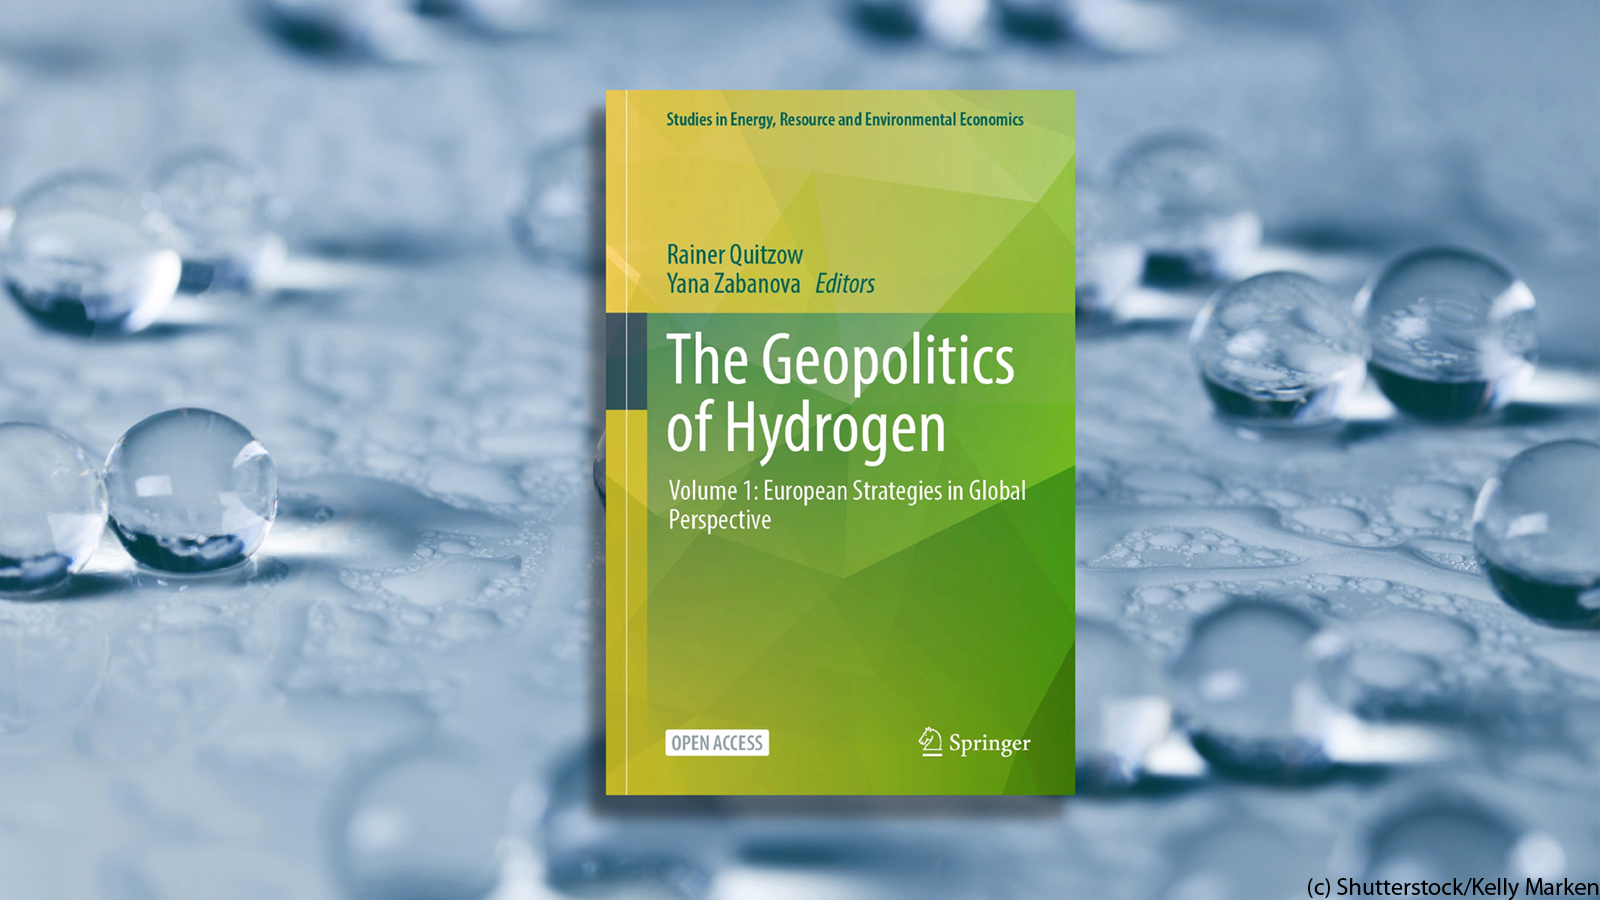 Geopolitik des Wasserstoffs: Buch untersucht europäische Strategien